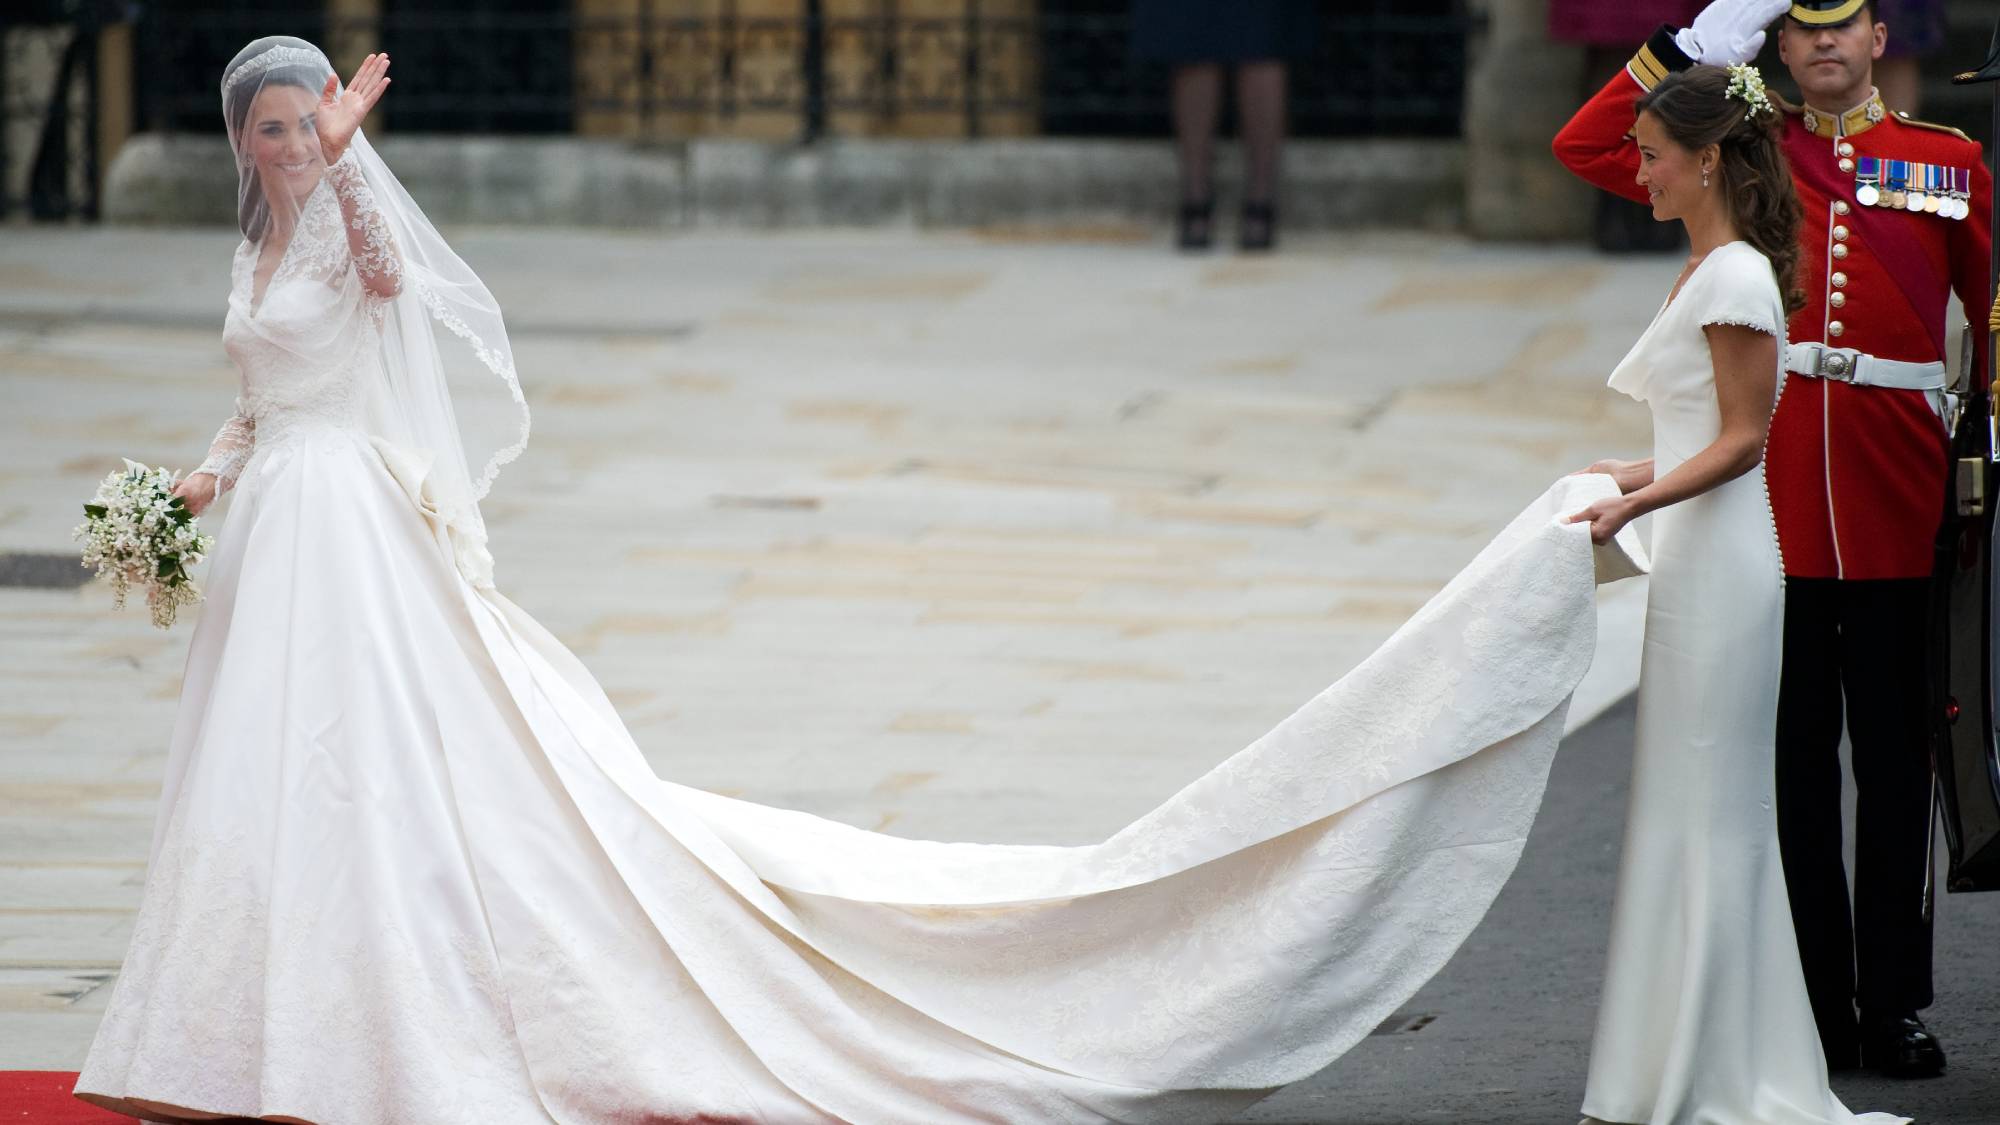 støj Illustrer garage Kate Middleton's second wedding dress was stunning | Marie Claire UK